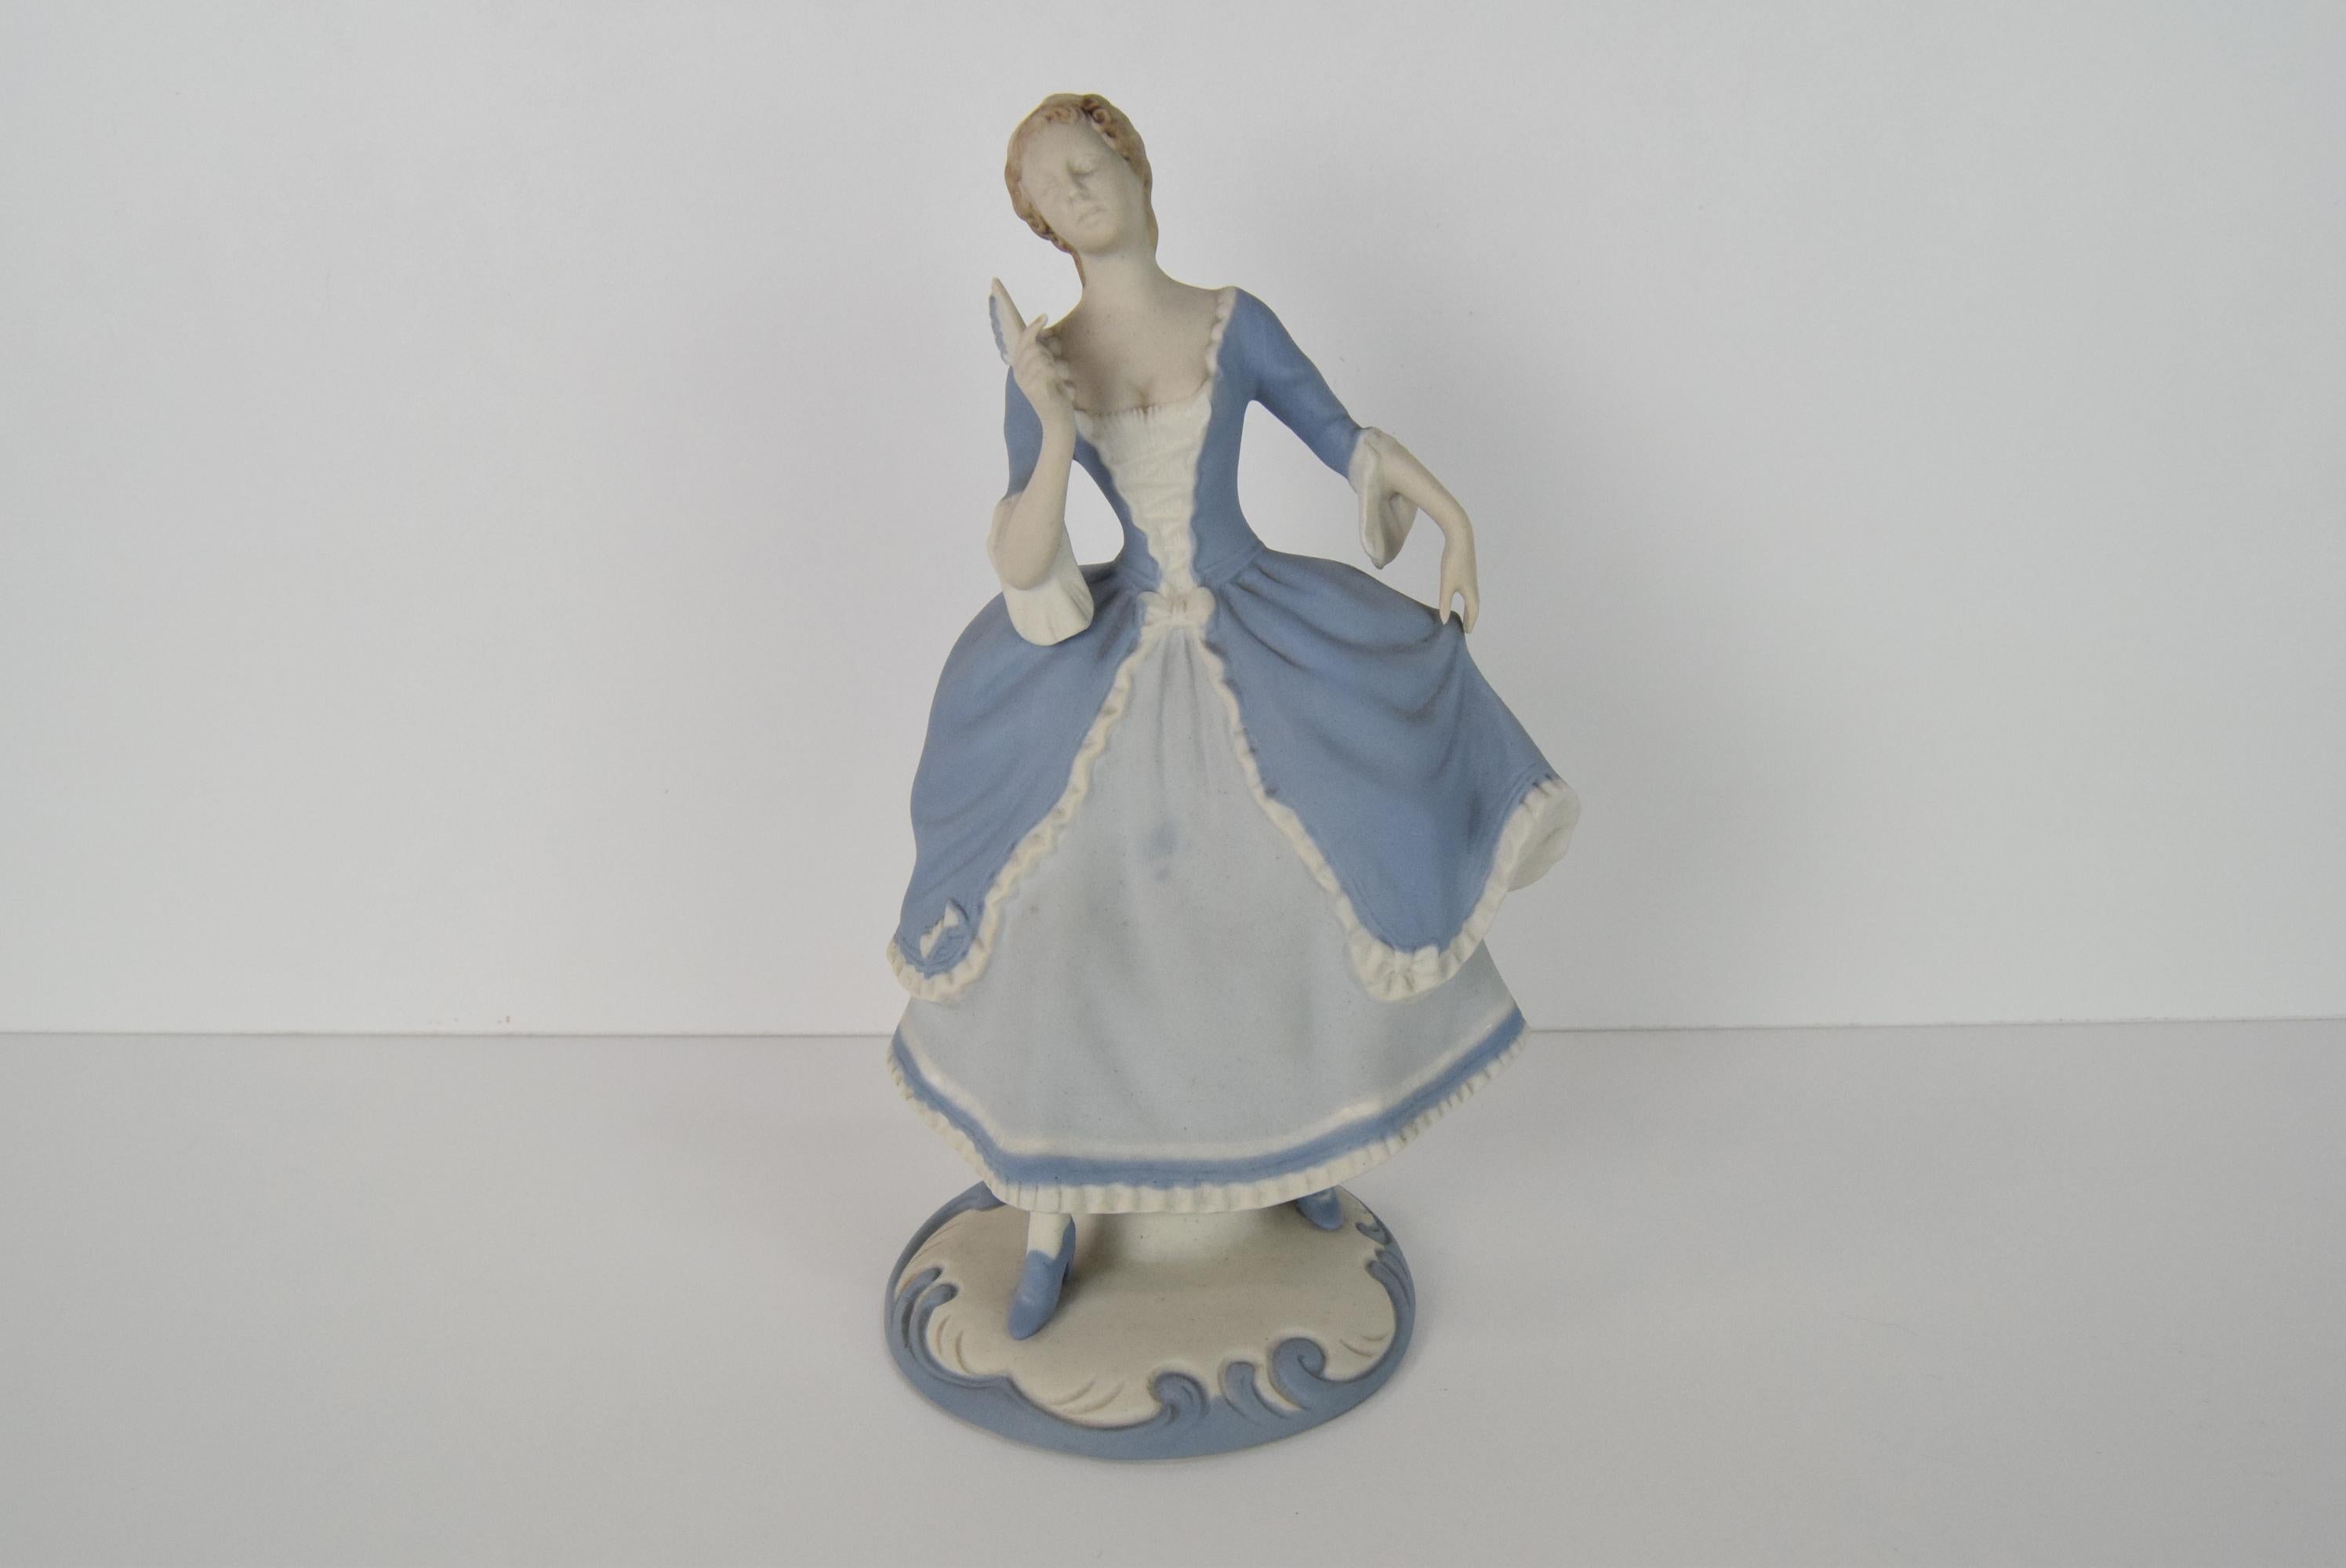 
La statuette a été conçue par le designer de la manufacture de porcelaine de Duchc, Ellis Strobach Königová 1908-2002.
Ses figurines en porcelaine sont connues et appréciées dans le monde entier pour son style artistique luxueux.
Signé
Bon état